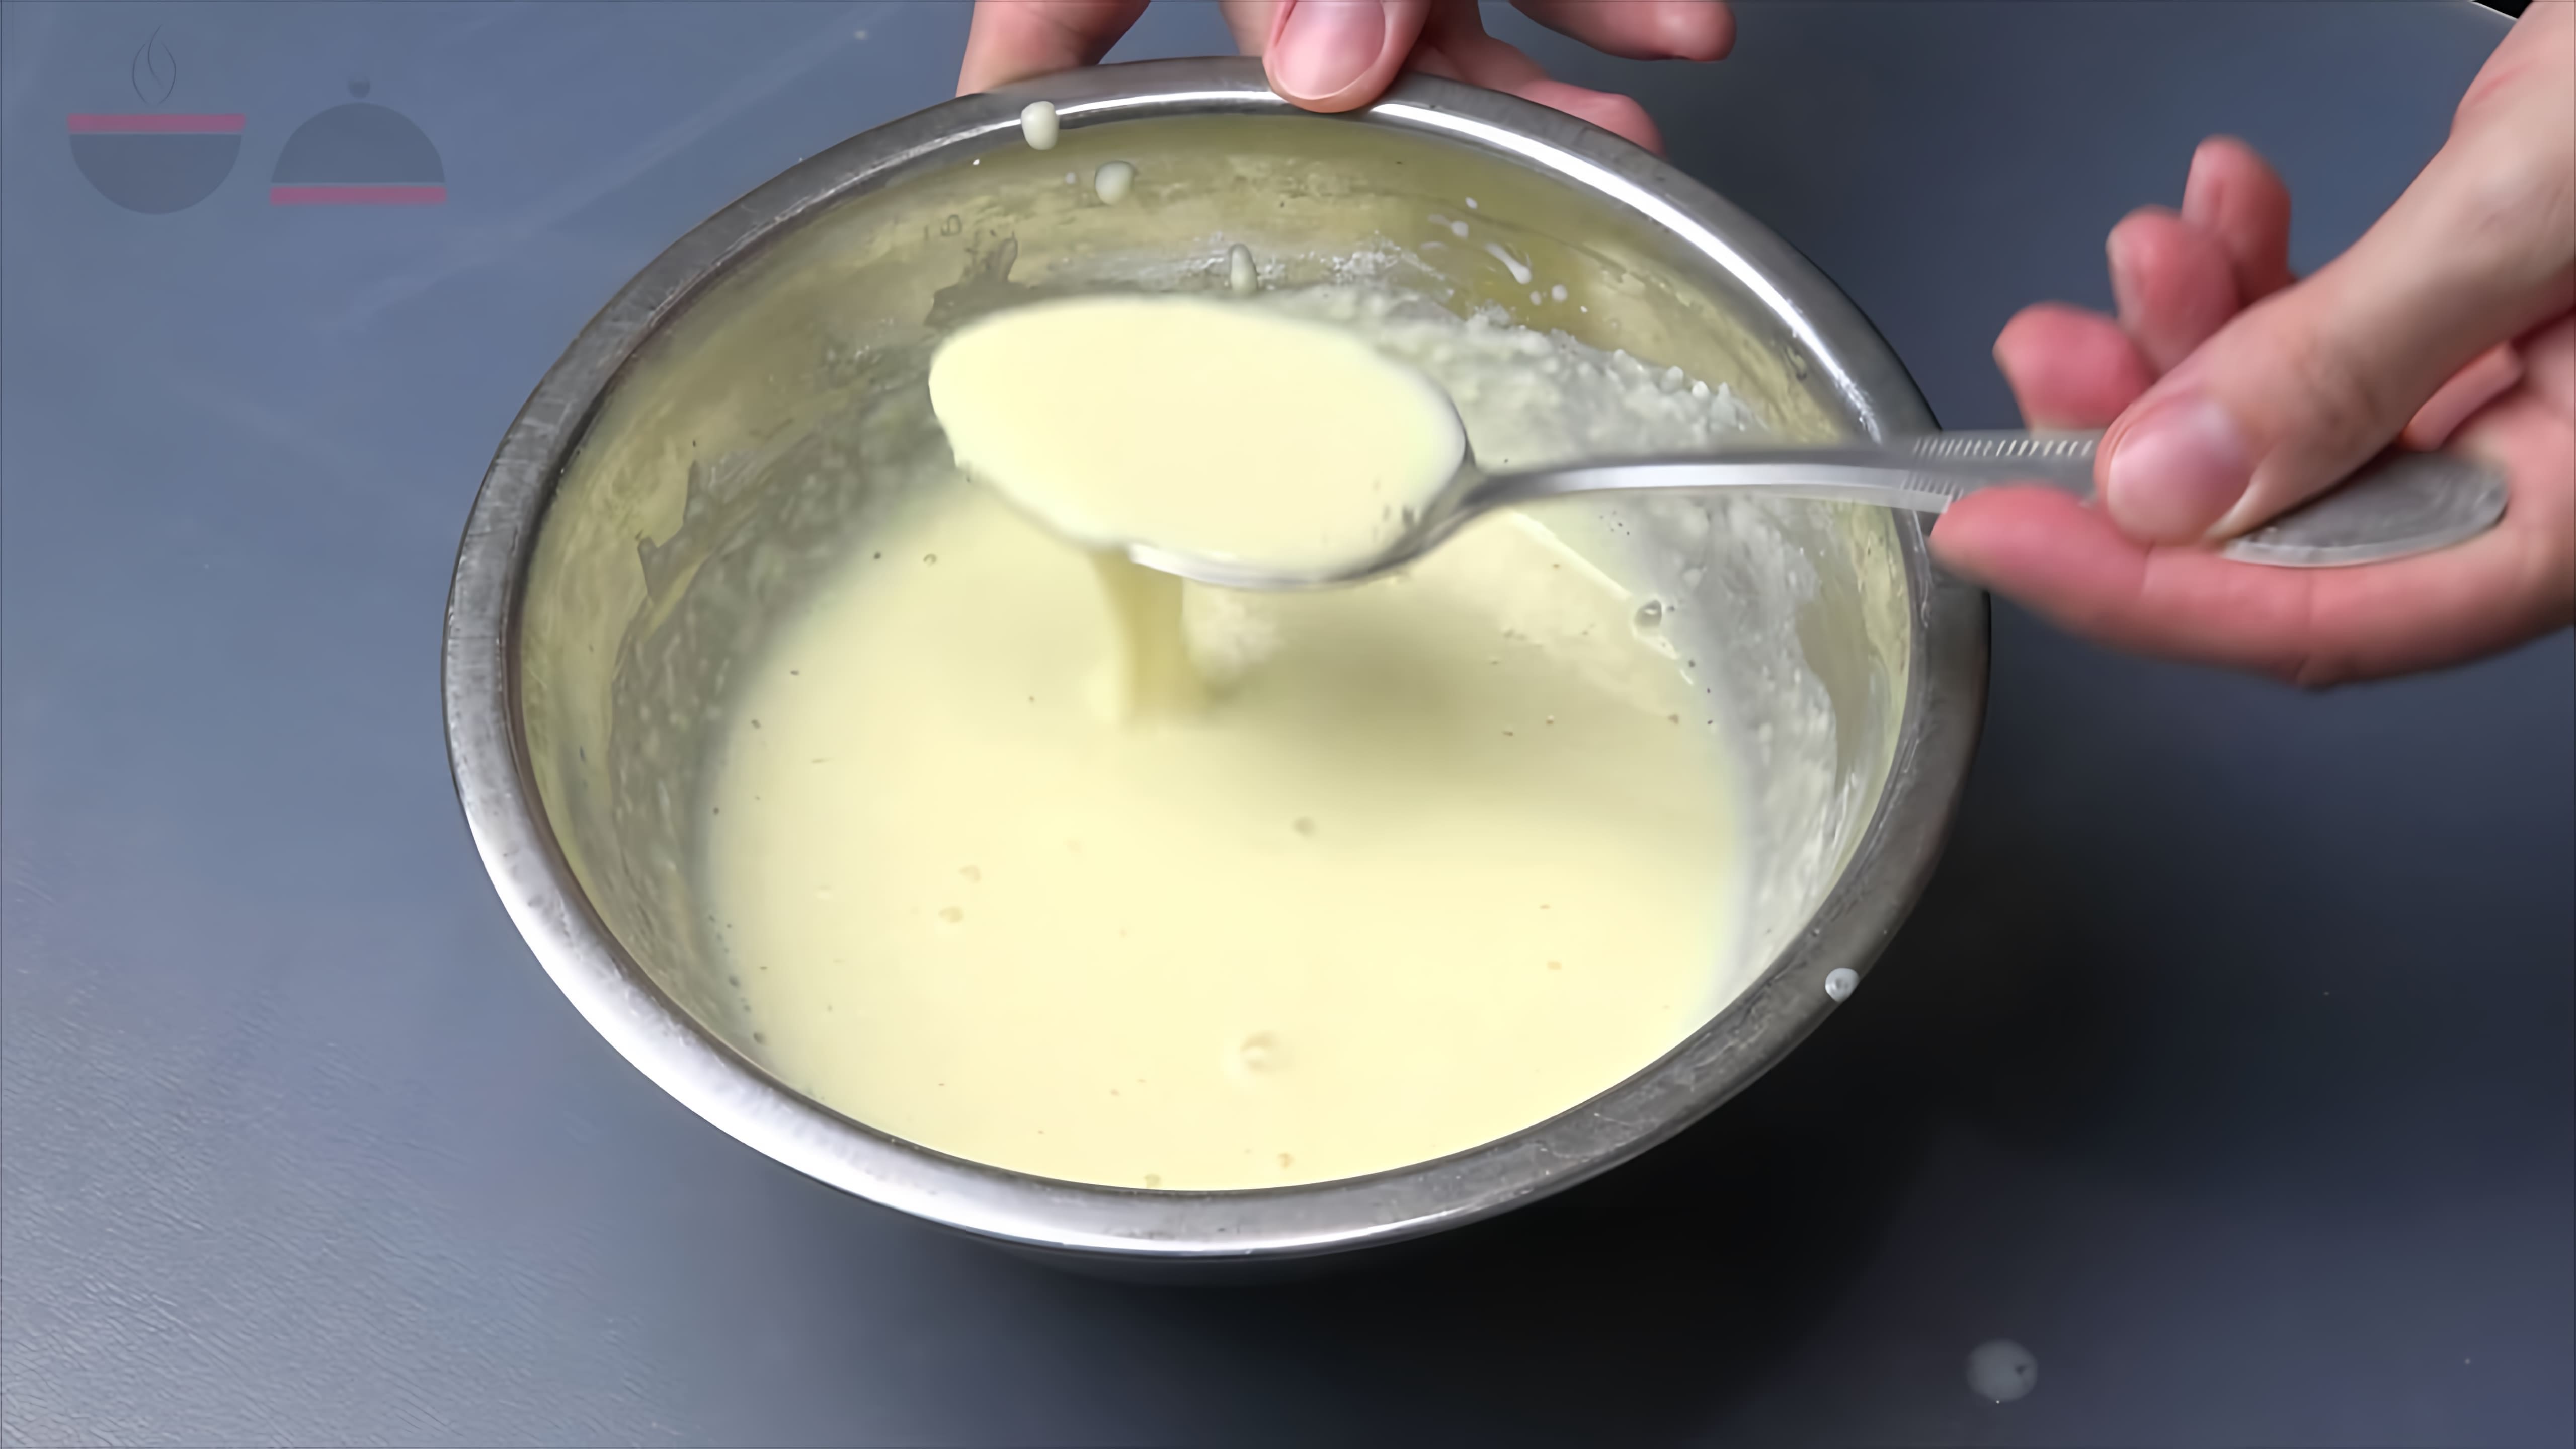 Вкусные кабачки - это видео-ролик, который демонстрирует процесс приготовления жареных кабачков в кляре